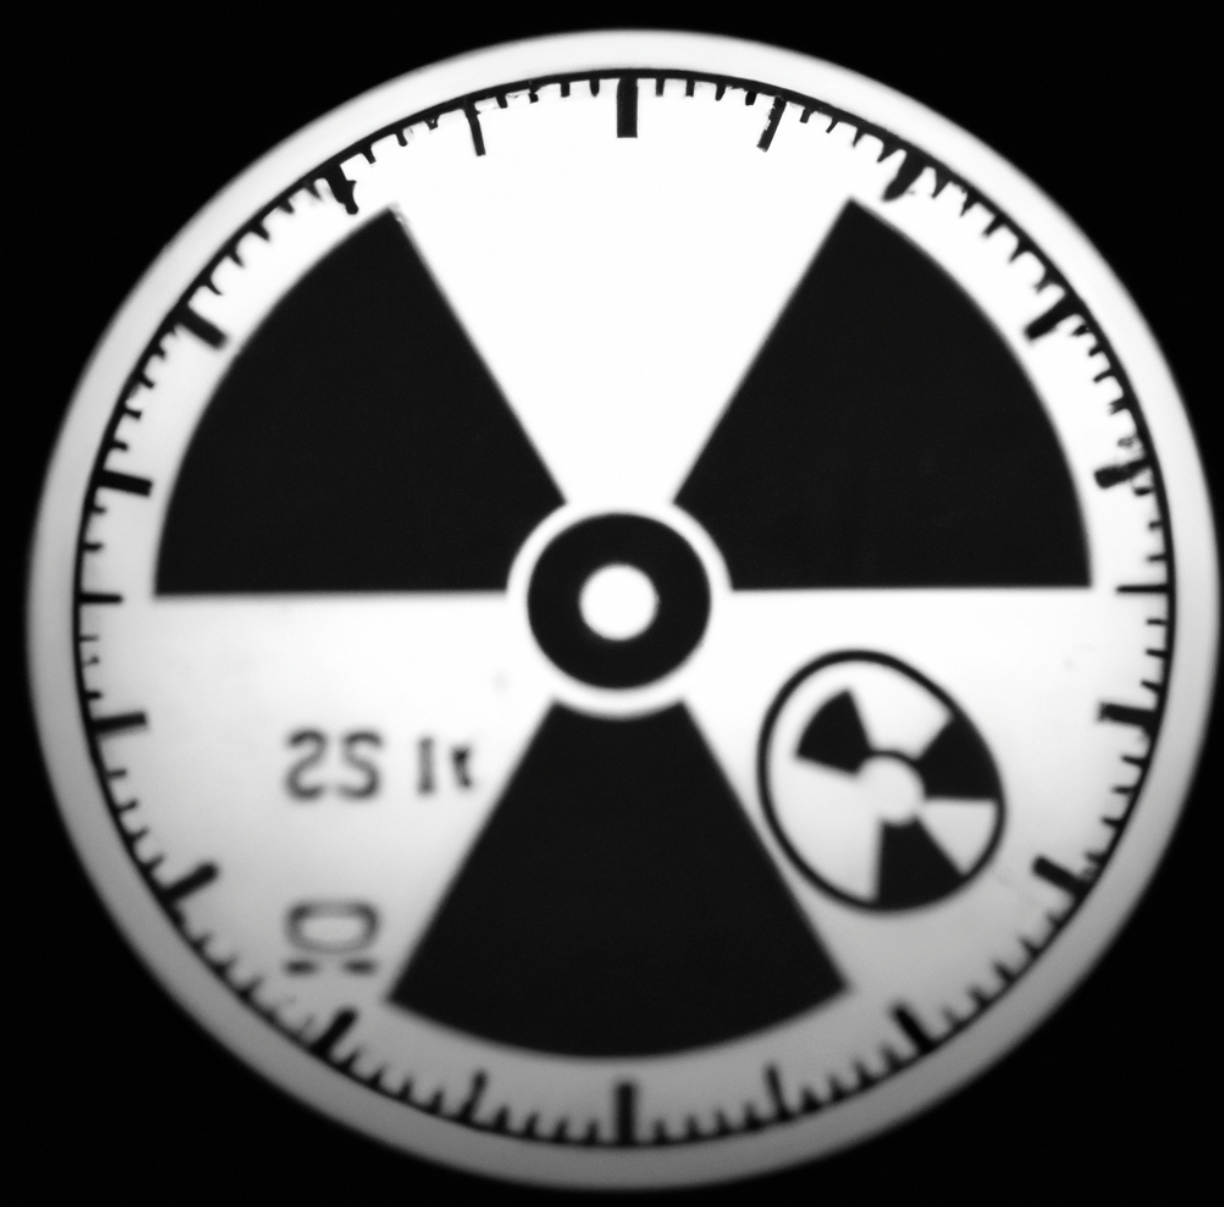 tritium radiation symbol black and white